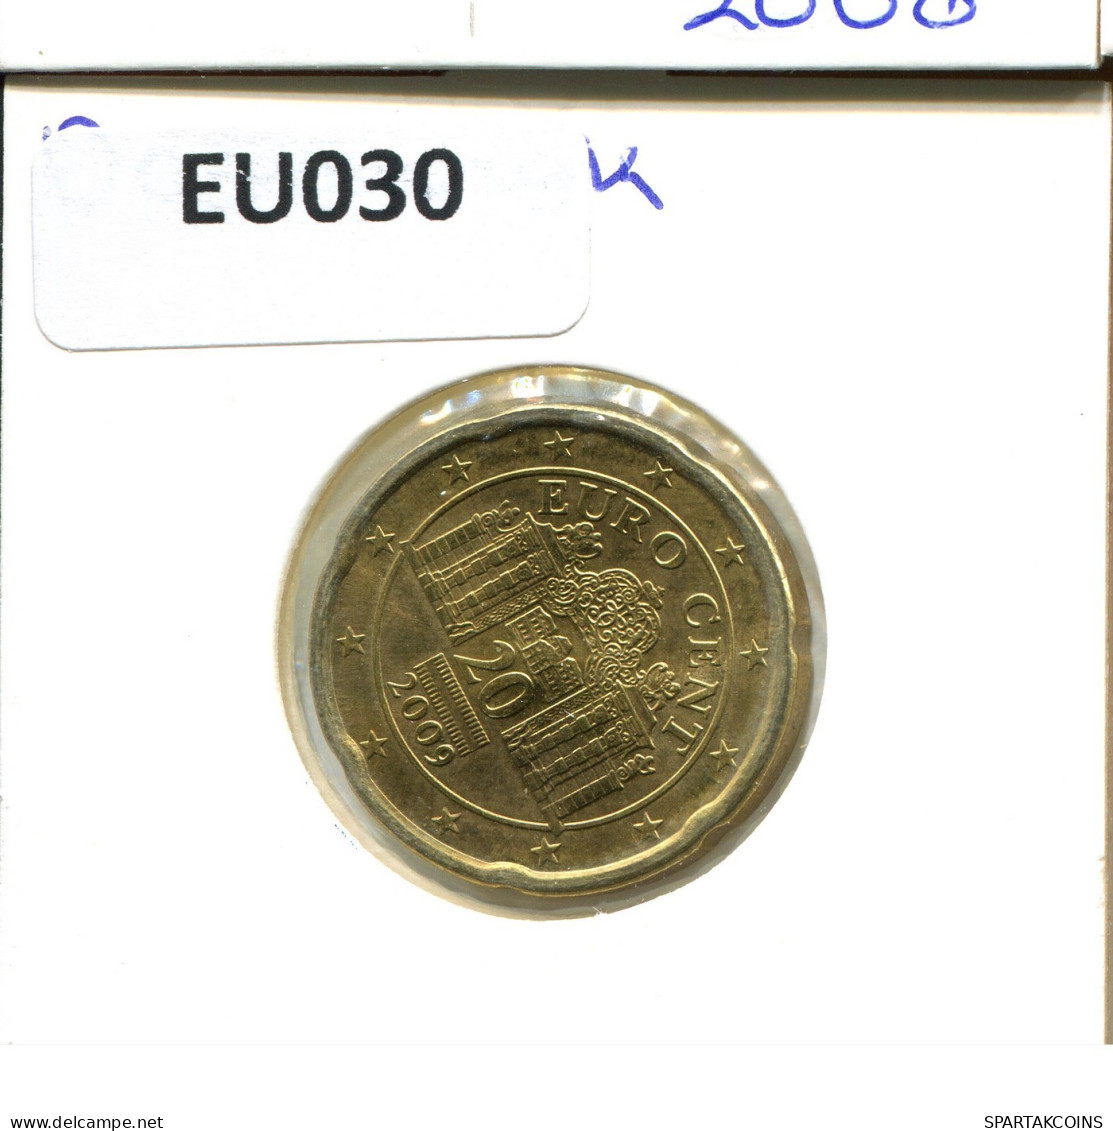 20 EURO CENTS 2009 AUTRICHE AUSTRIA Pièce #EU030.F.A - Autriche